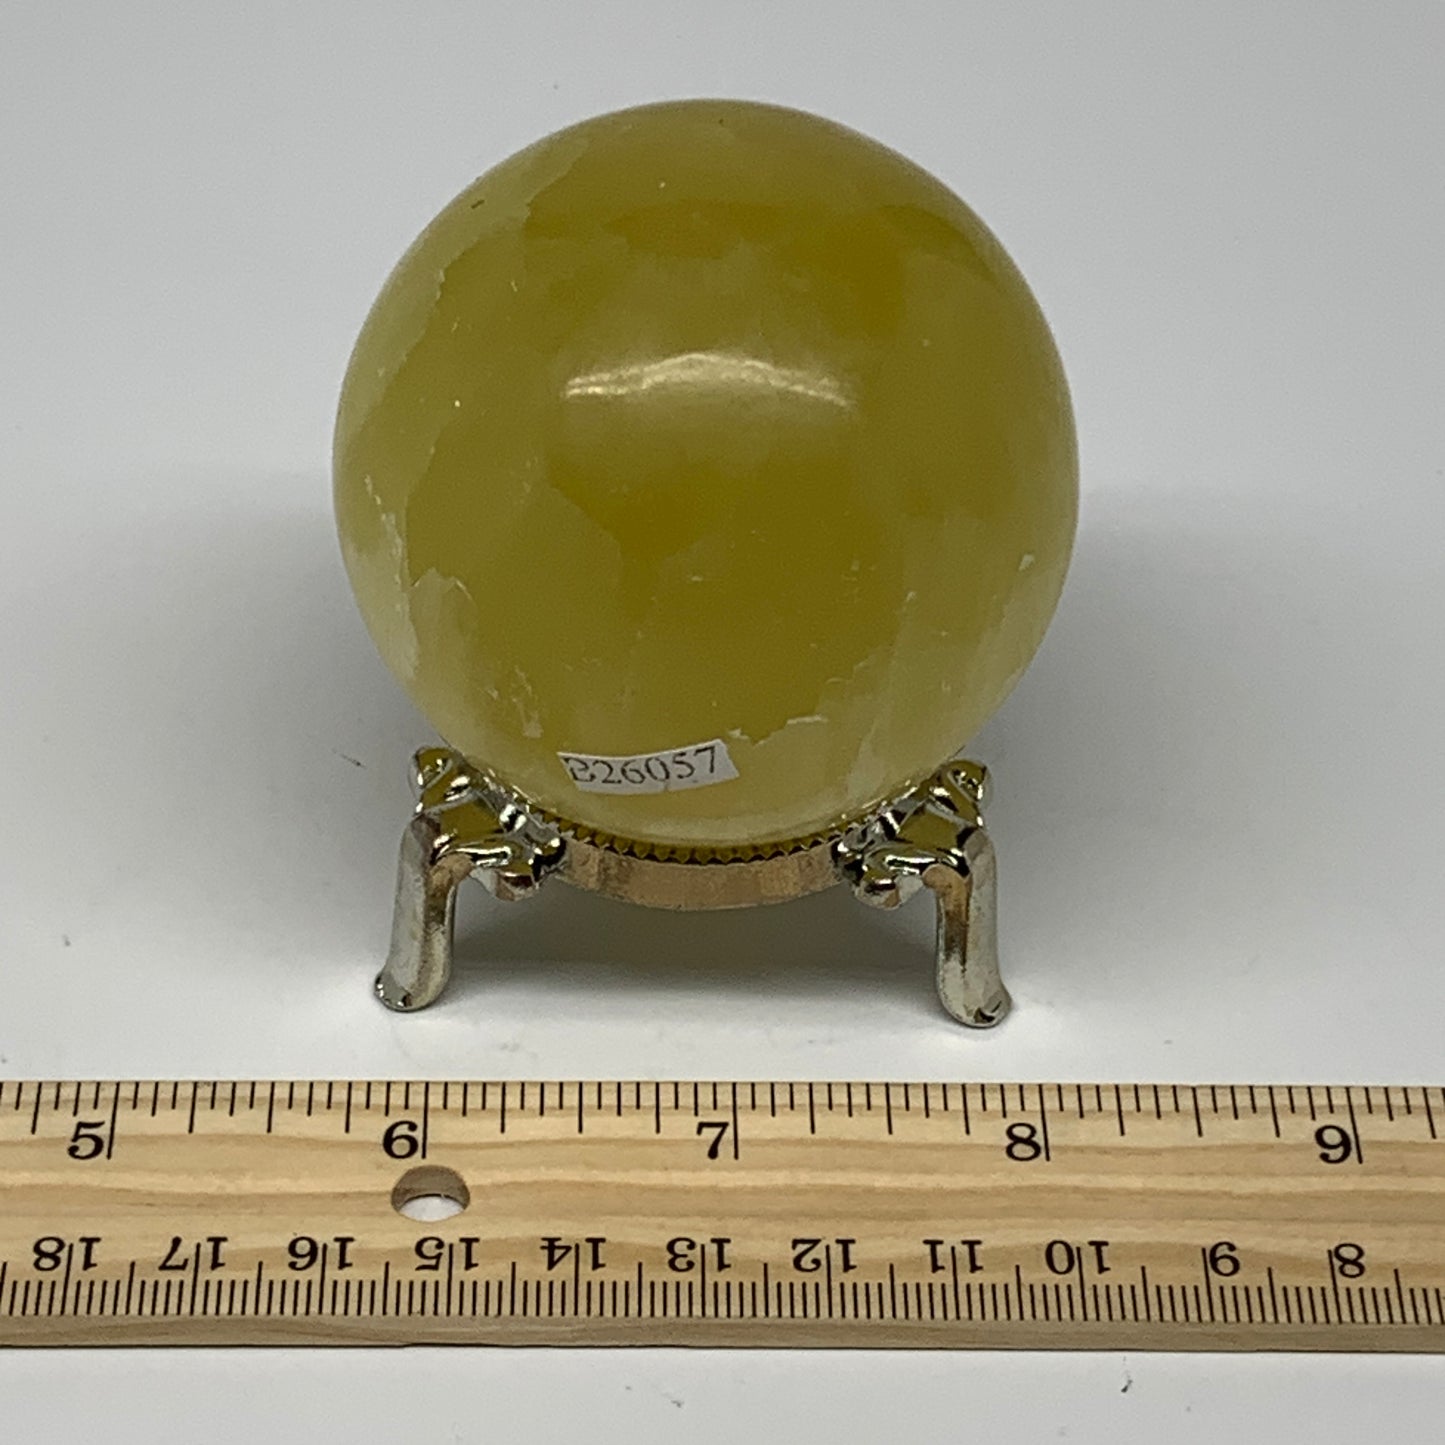 0.77 lbs,2.4"(61mm) Lemon Calcite Sphere Gemstone,Healing Crystal,B26057